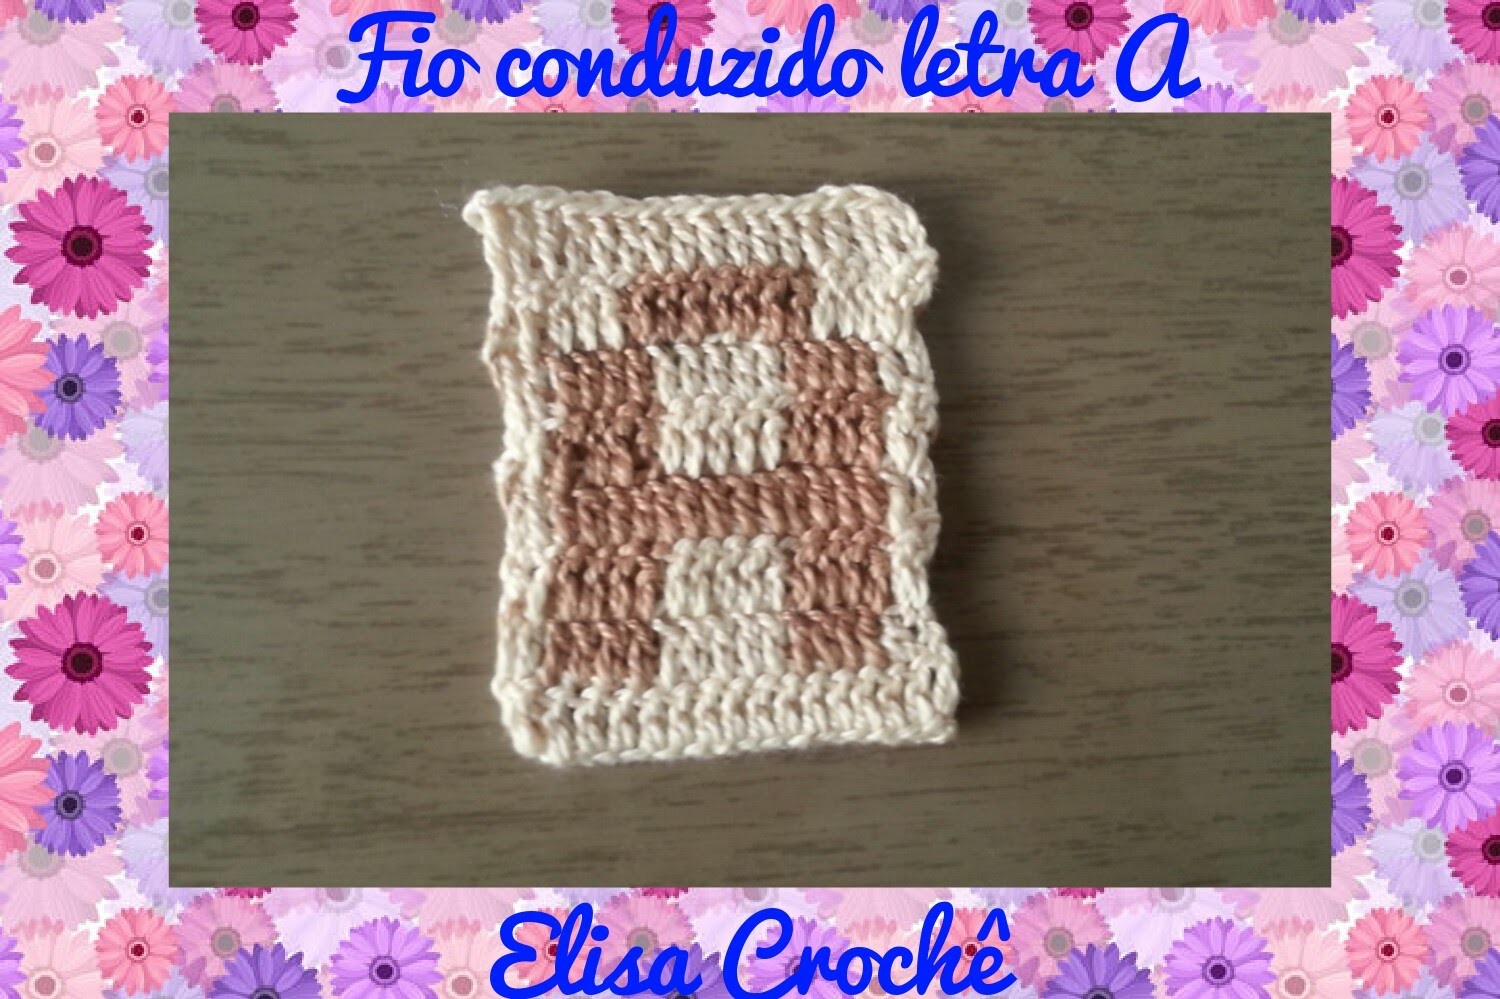 Letra A de crochê em fio conduzido # Elisa Crochê